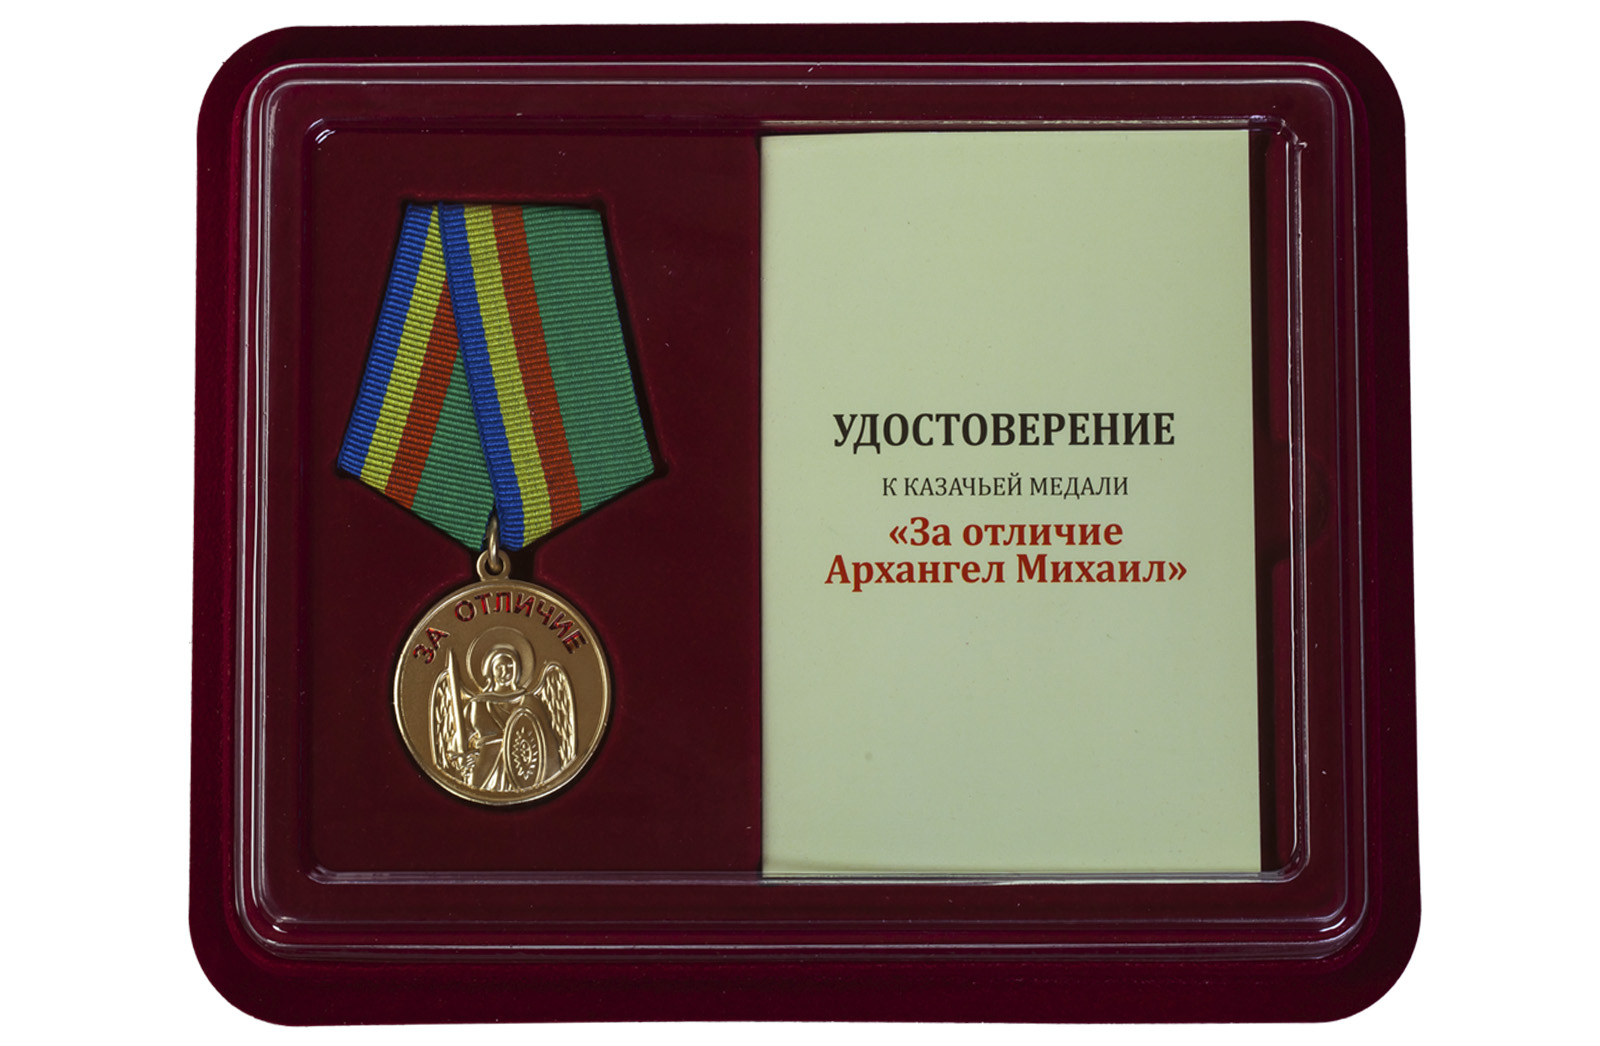 Купить казачью медаль За отличие Архангела Михаила выгодно в подарок